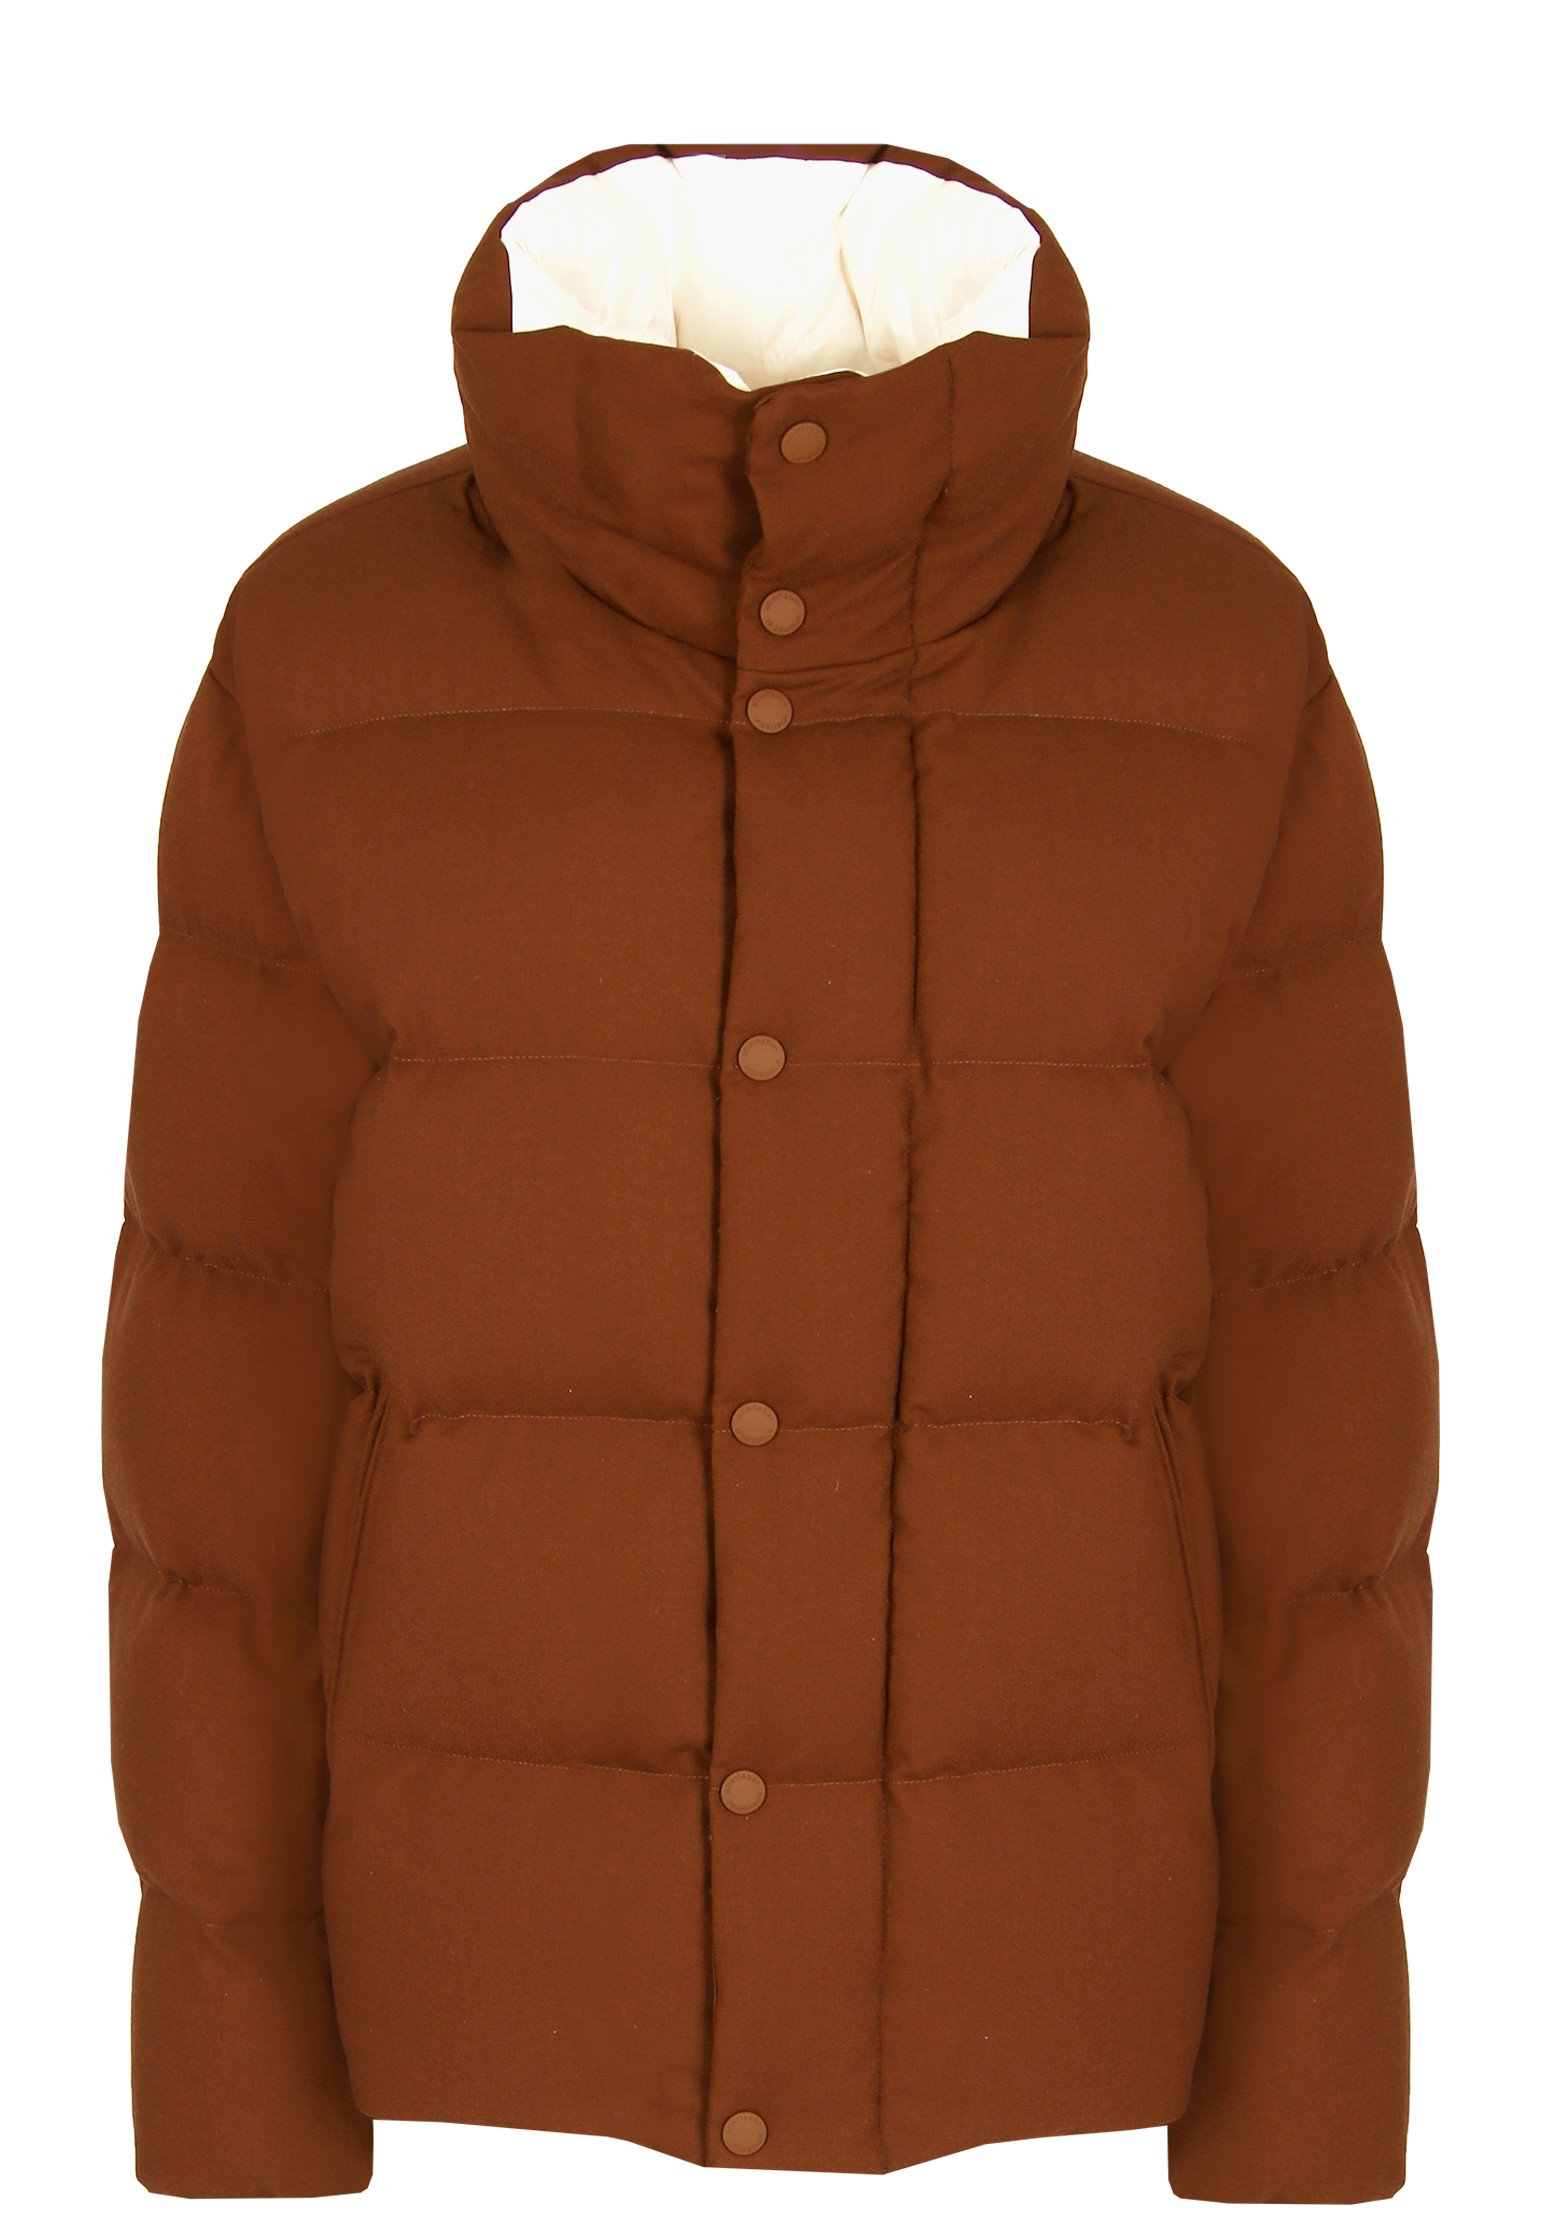 Куртка мужская AFTER LABEL 128790 коричневая S